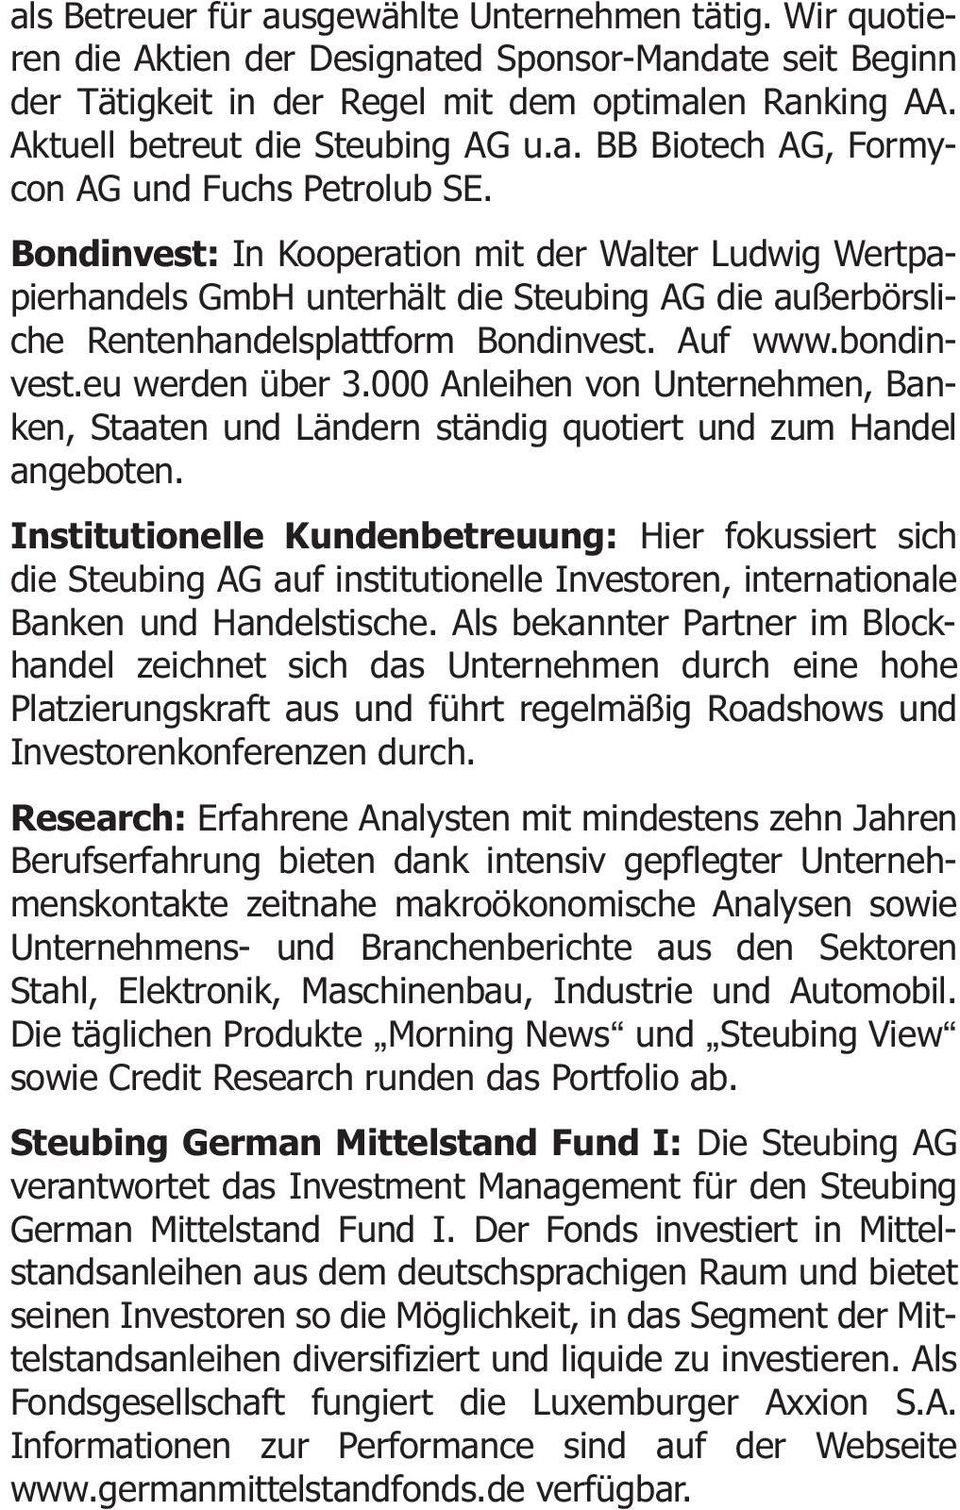 Bondinvest: In Kooperation mit der Walter Ludwig Wertpapierhandels GmbH unterhält die Steubing AG die außerbörsliche Rentenhandelsplattform Bondinvest. Auf www.bondinvest.eu werden über 3.